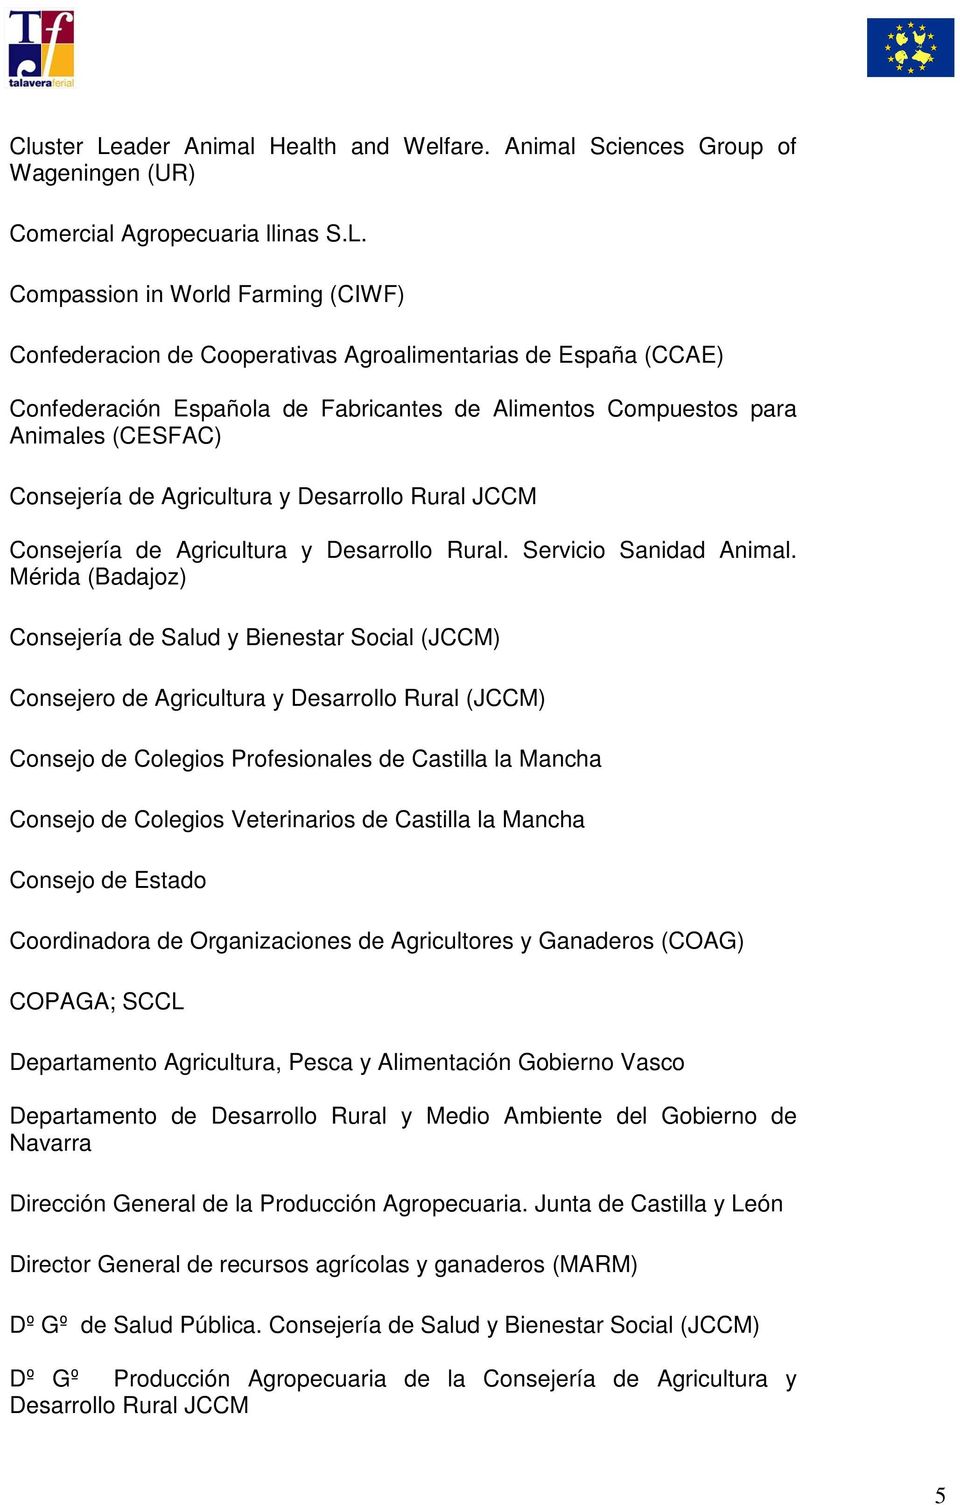 Compassion in World Farming (CIWF) Confederacion de Cooperativas Agroalimentarias de España (CCAE) Confederación Española de Fabricantes de Alimentos Compuestos para Animales (CESFAC) Consejería de